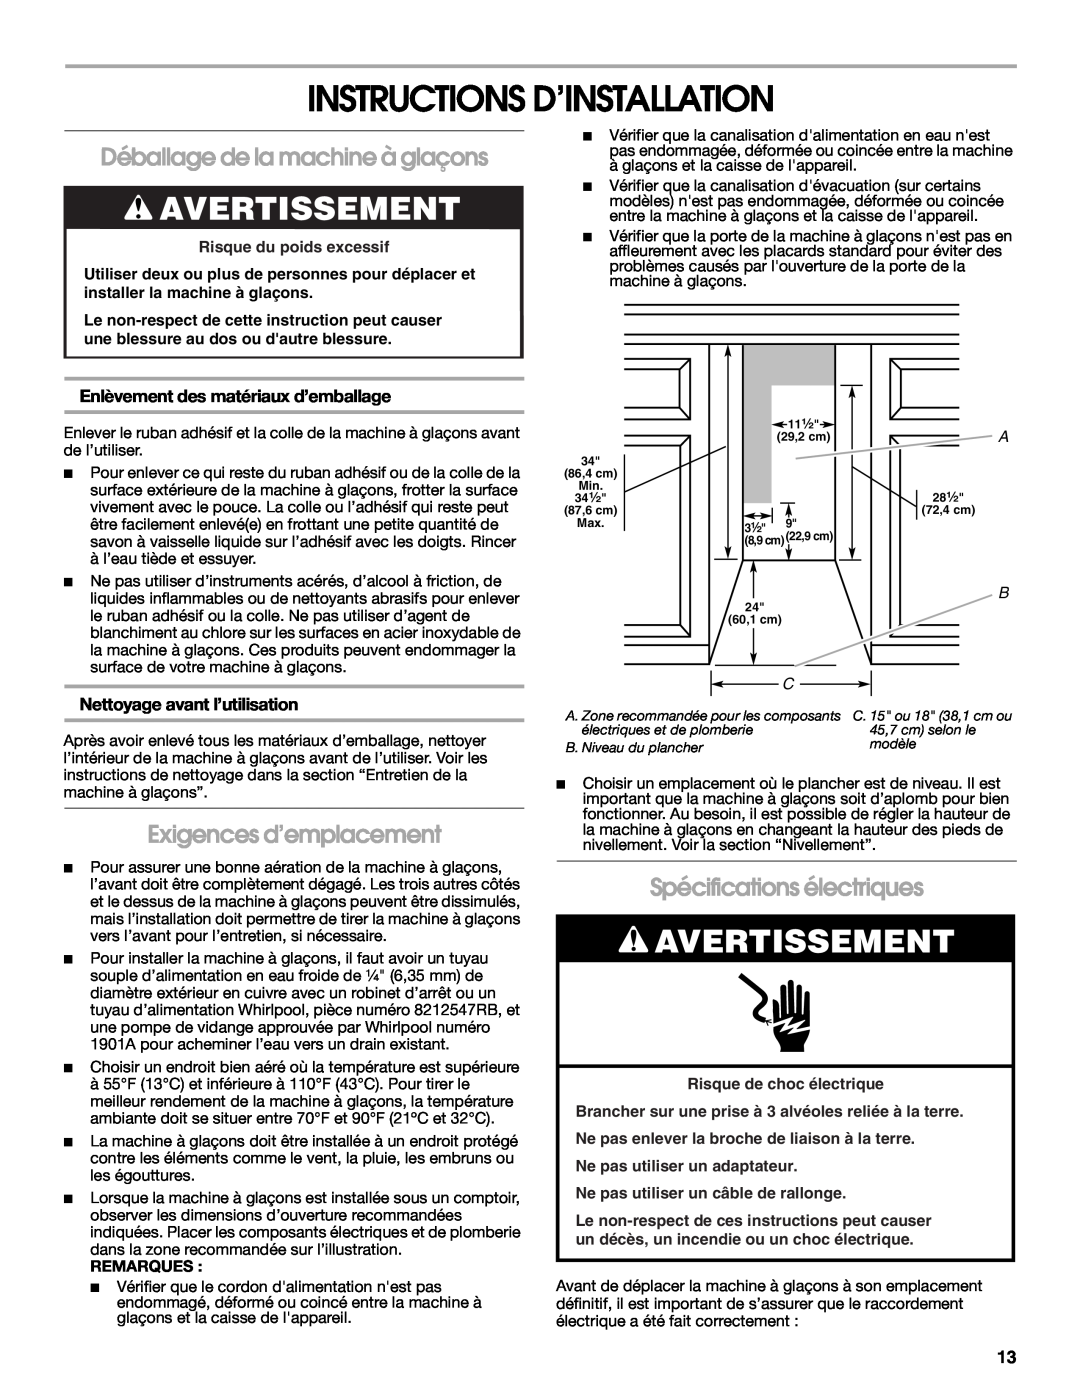 Whirlpool W10541636B Instructions D’Installation, Avertissement, Déballage de la machine à glaçons, Remarques 